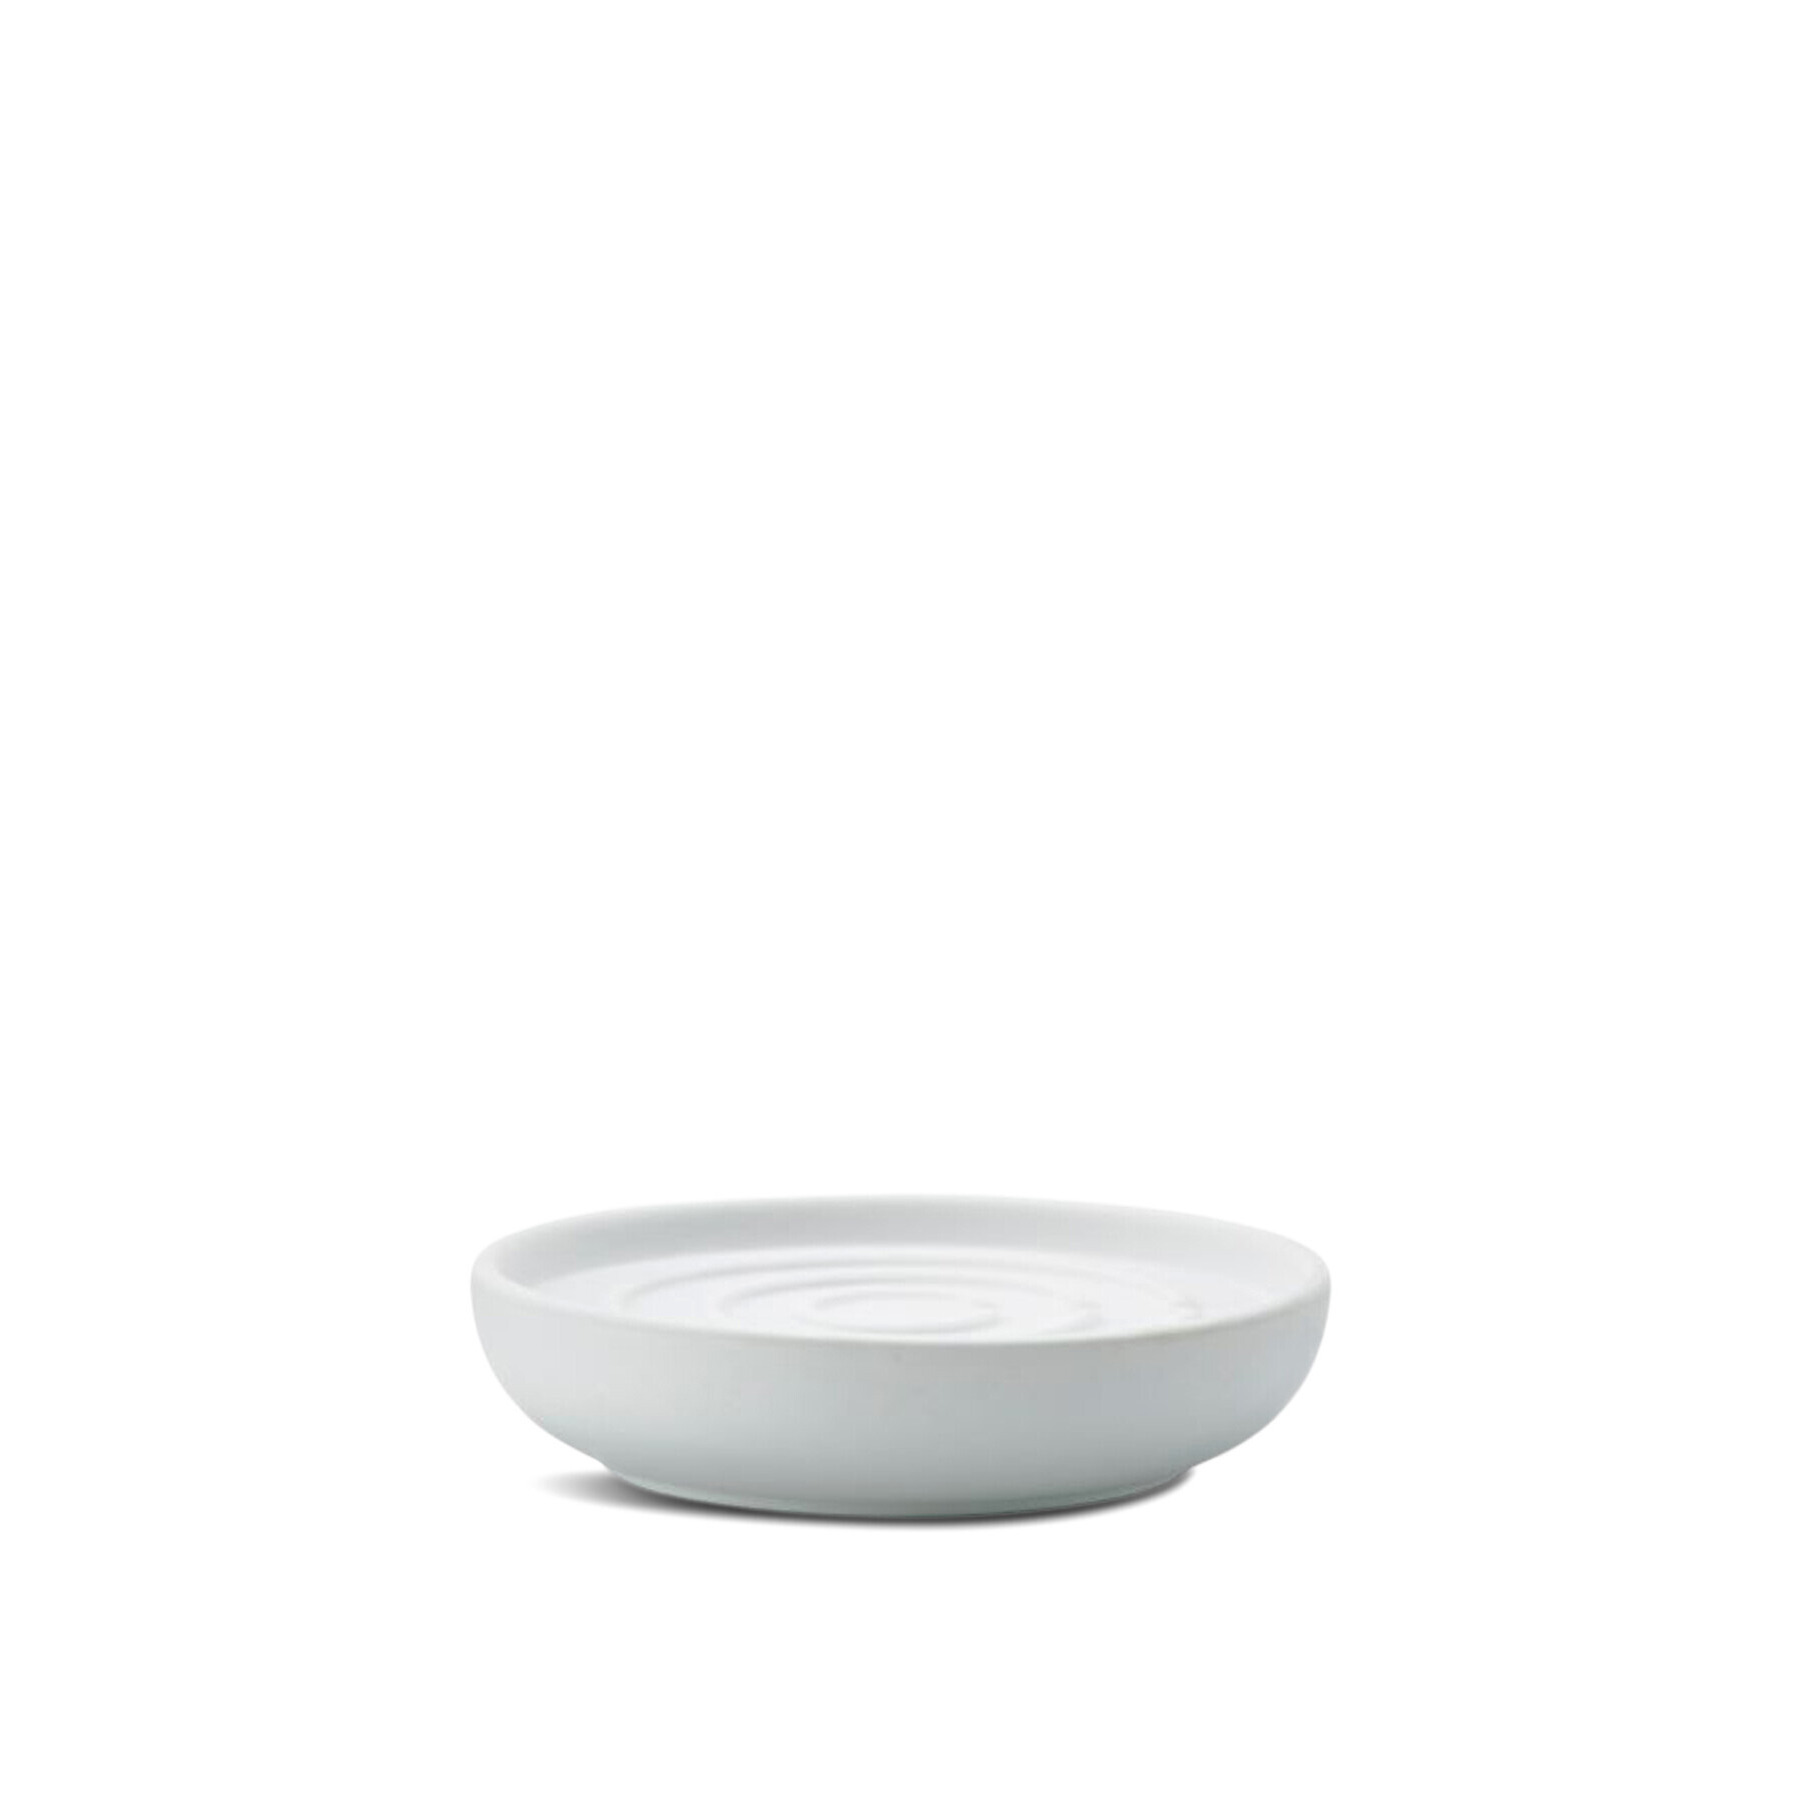 Zone Nova Soap Dish White - image 1